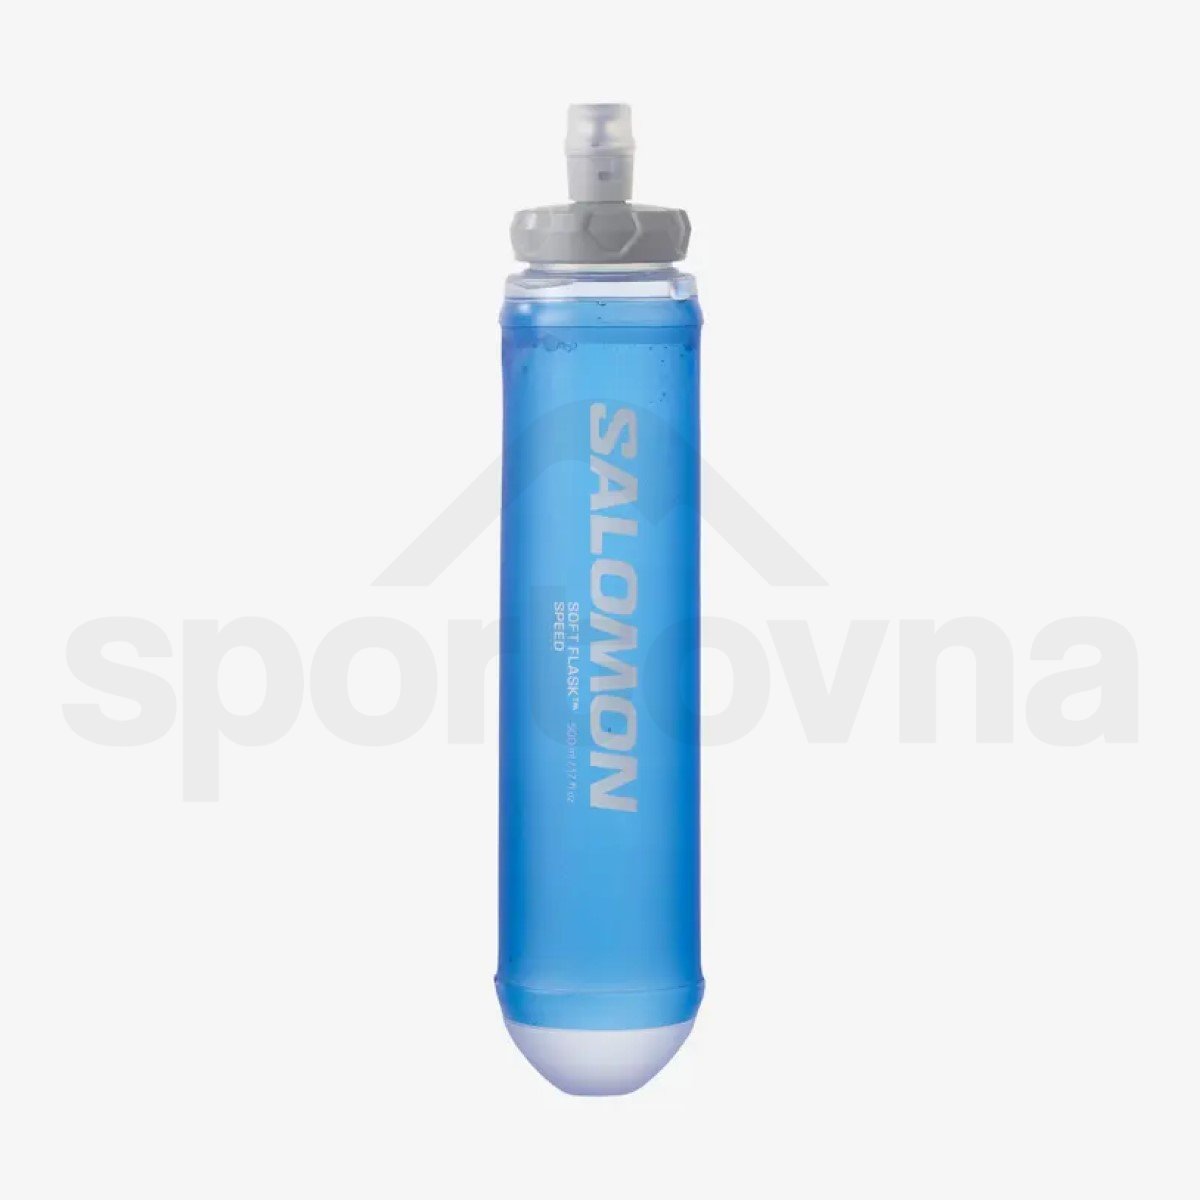 Batoh Salomon Sense Pro 5 with flasks - černá/bílá